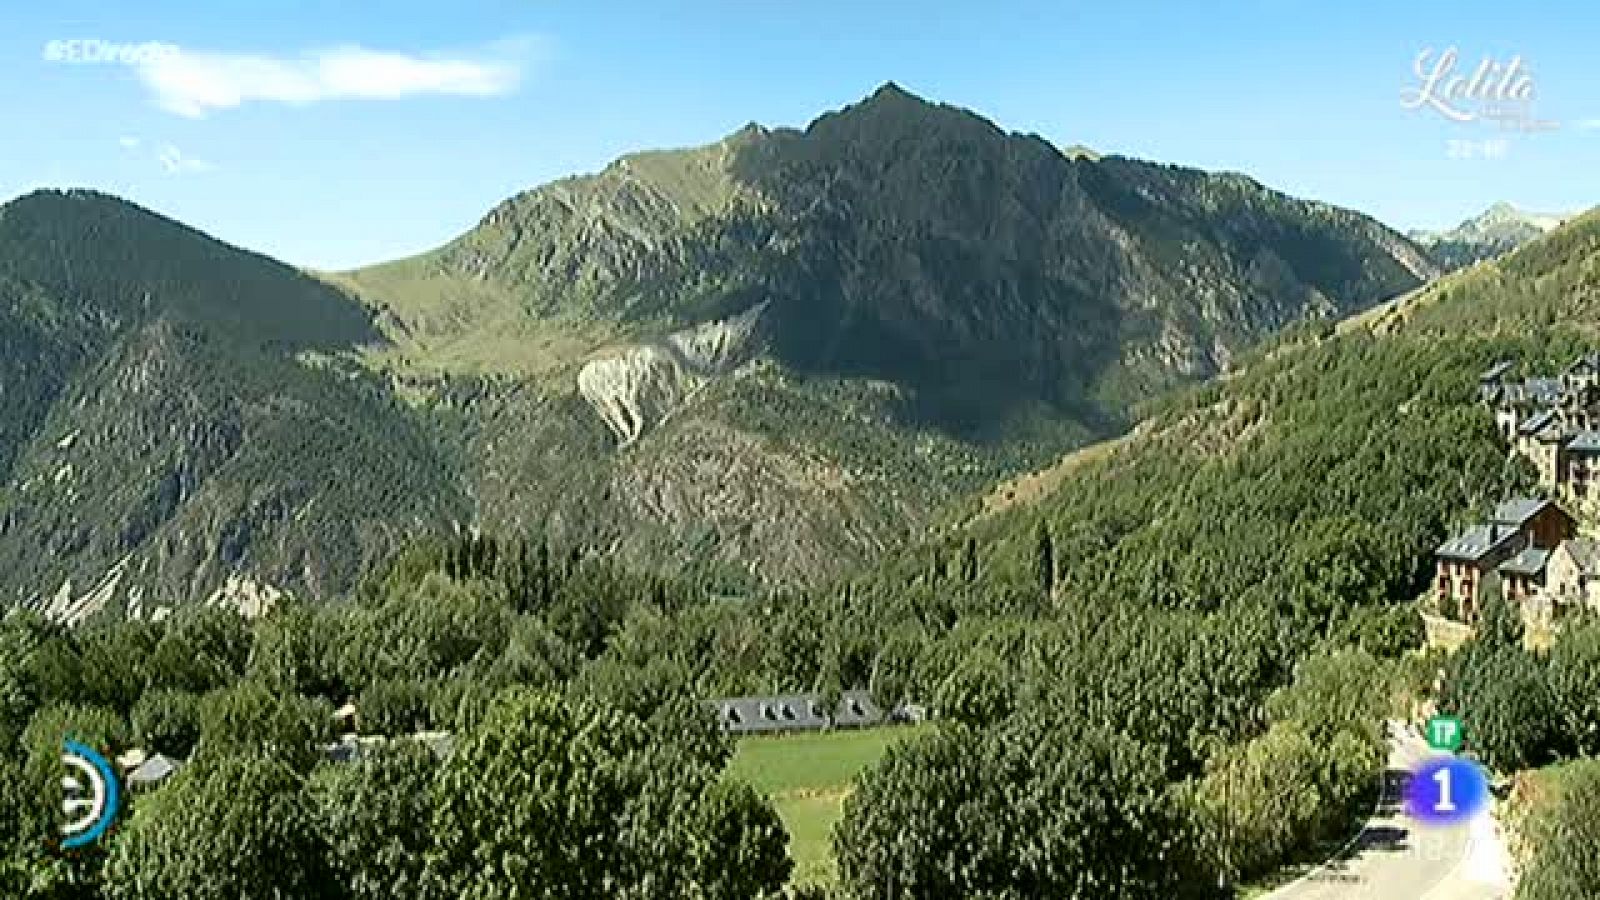 España Directo - Vall de Boí, un paraíso para el relax